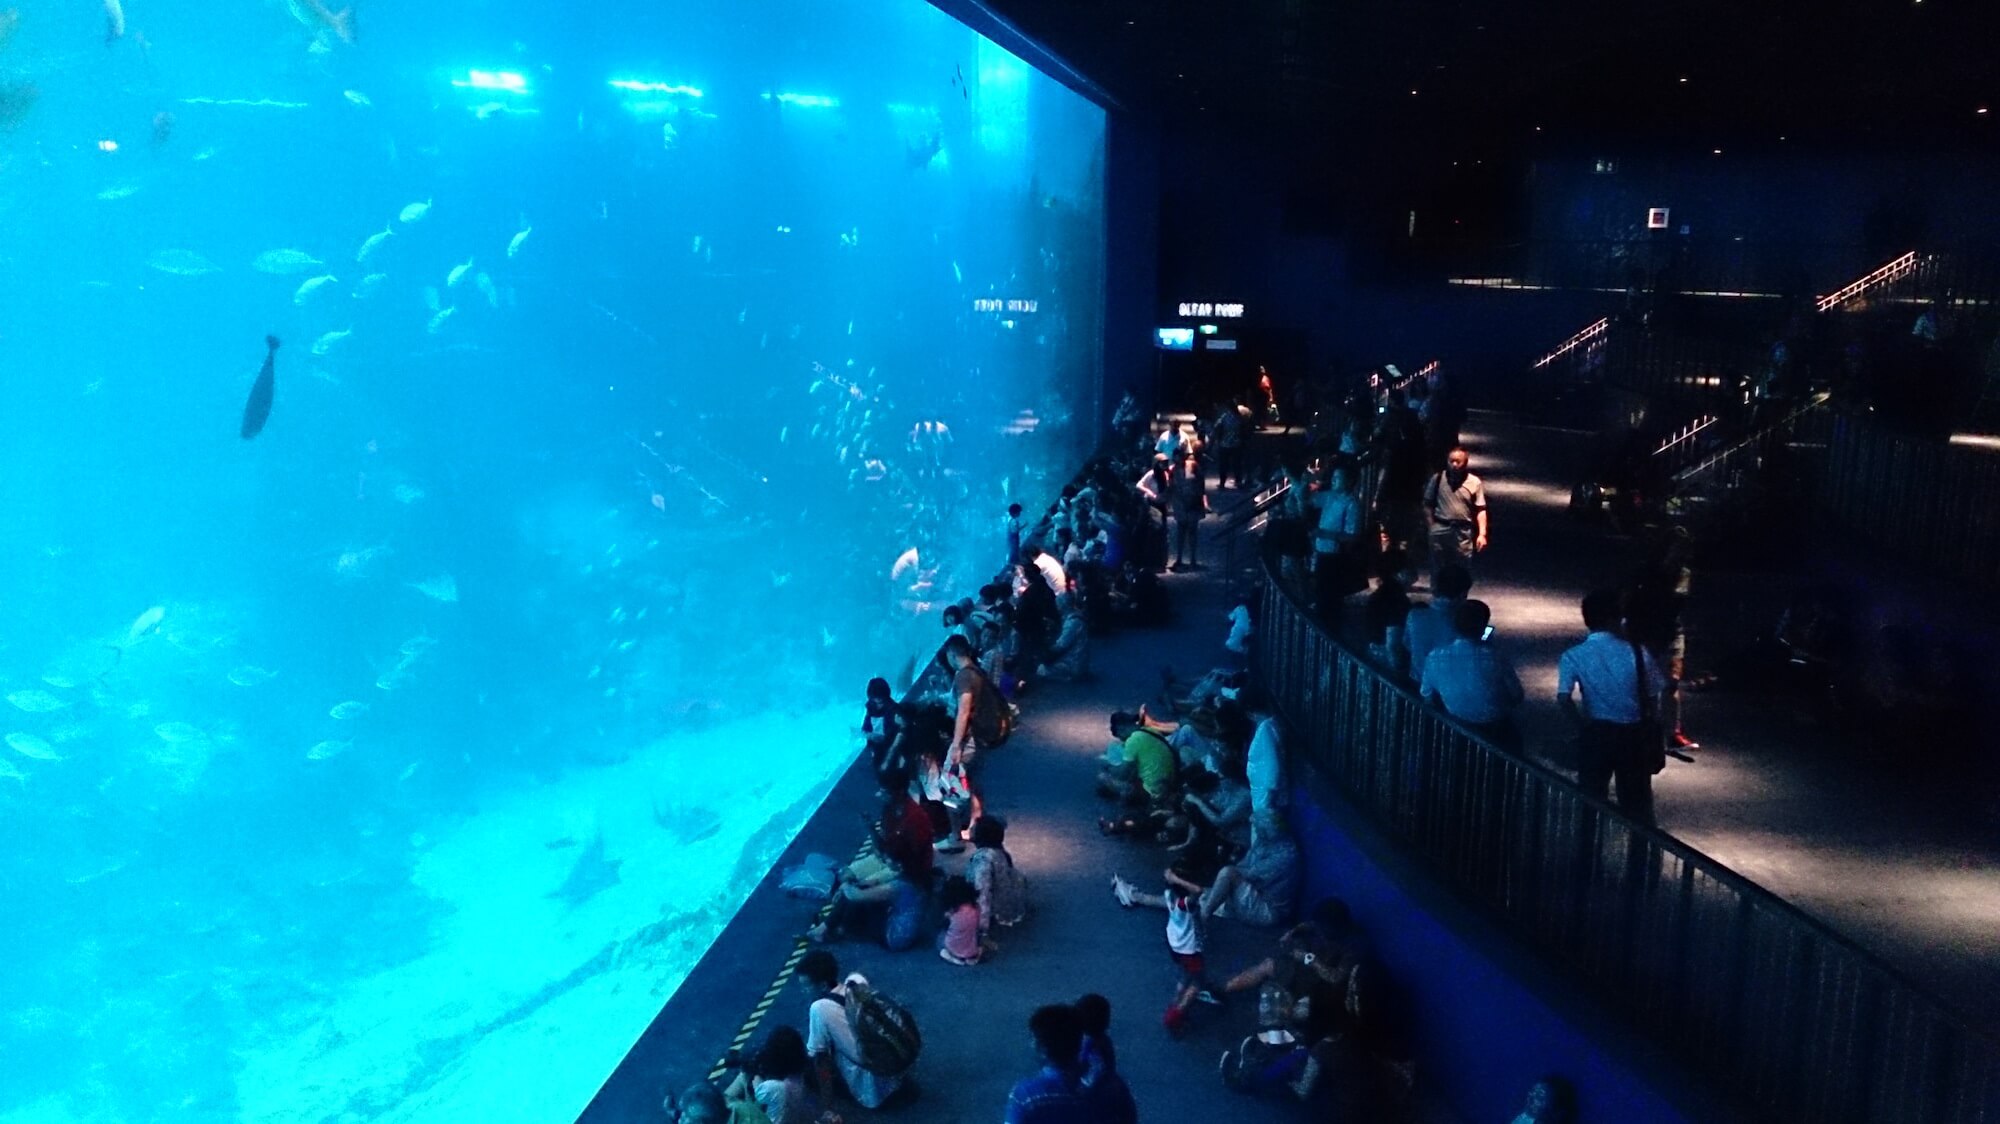 S.E.A. Aquarium Singapore. Source: Project Manhattan